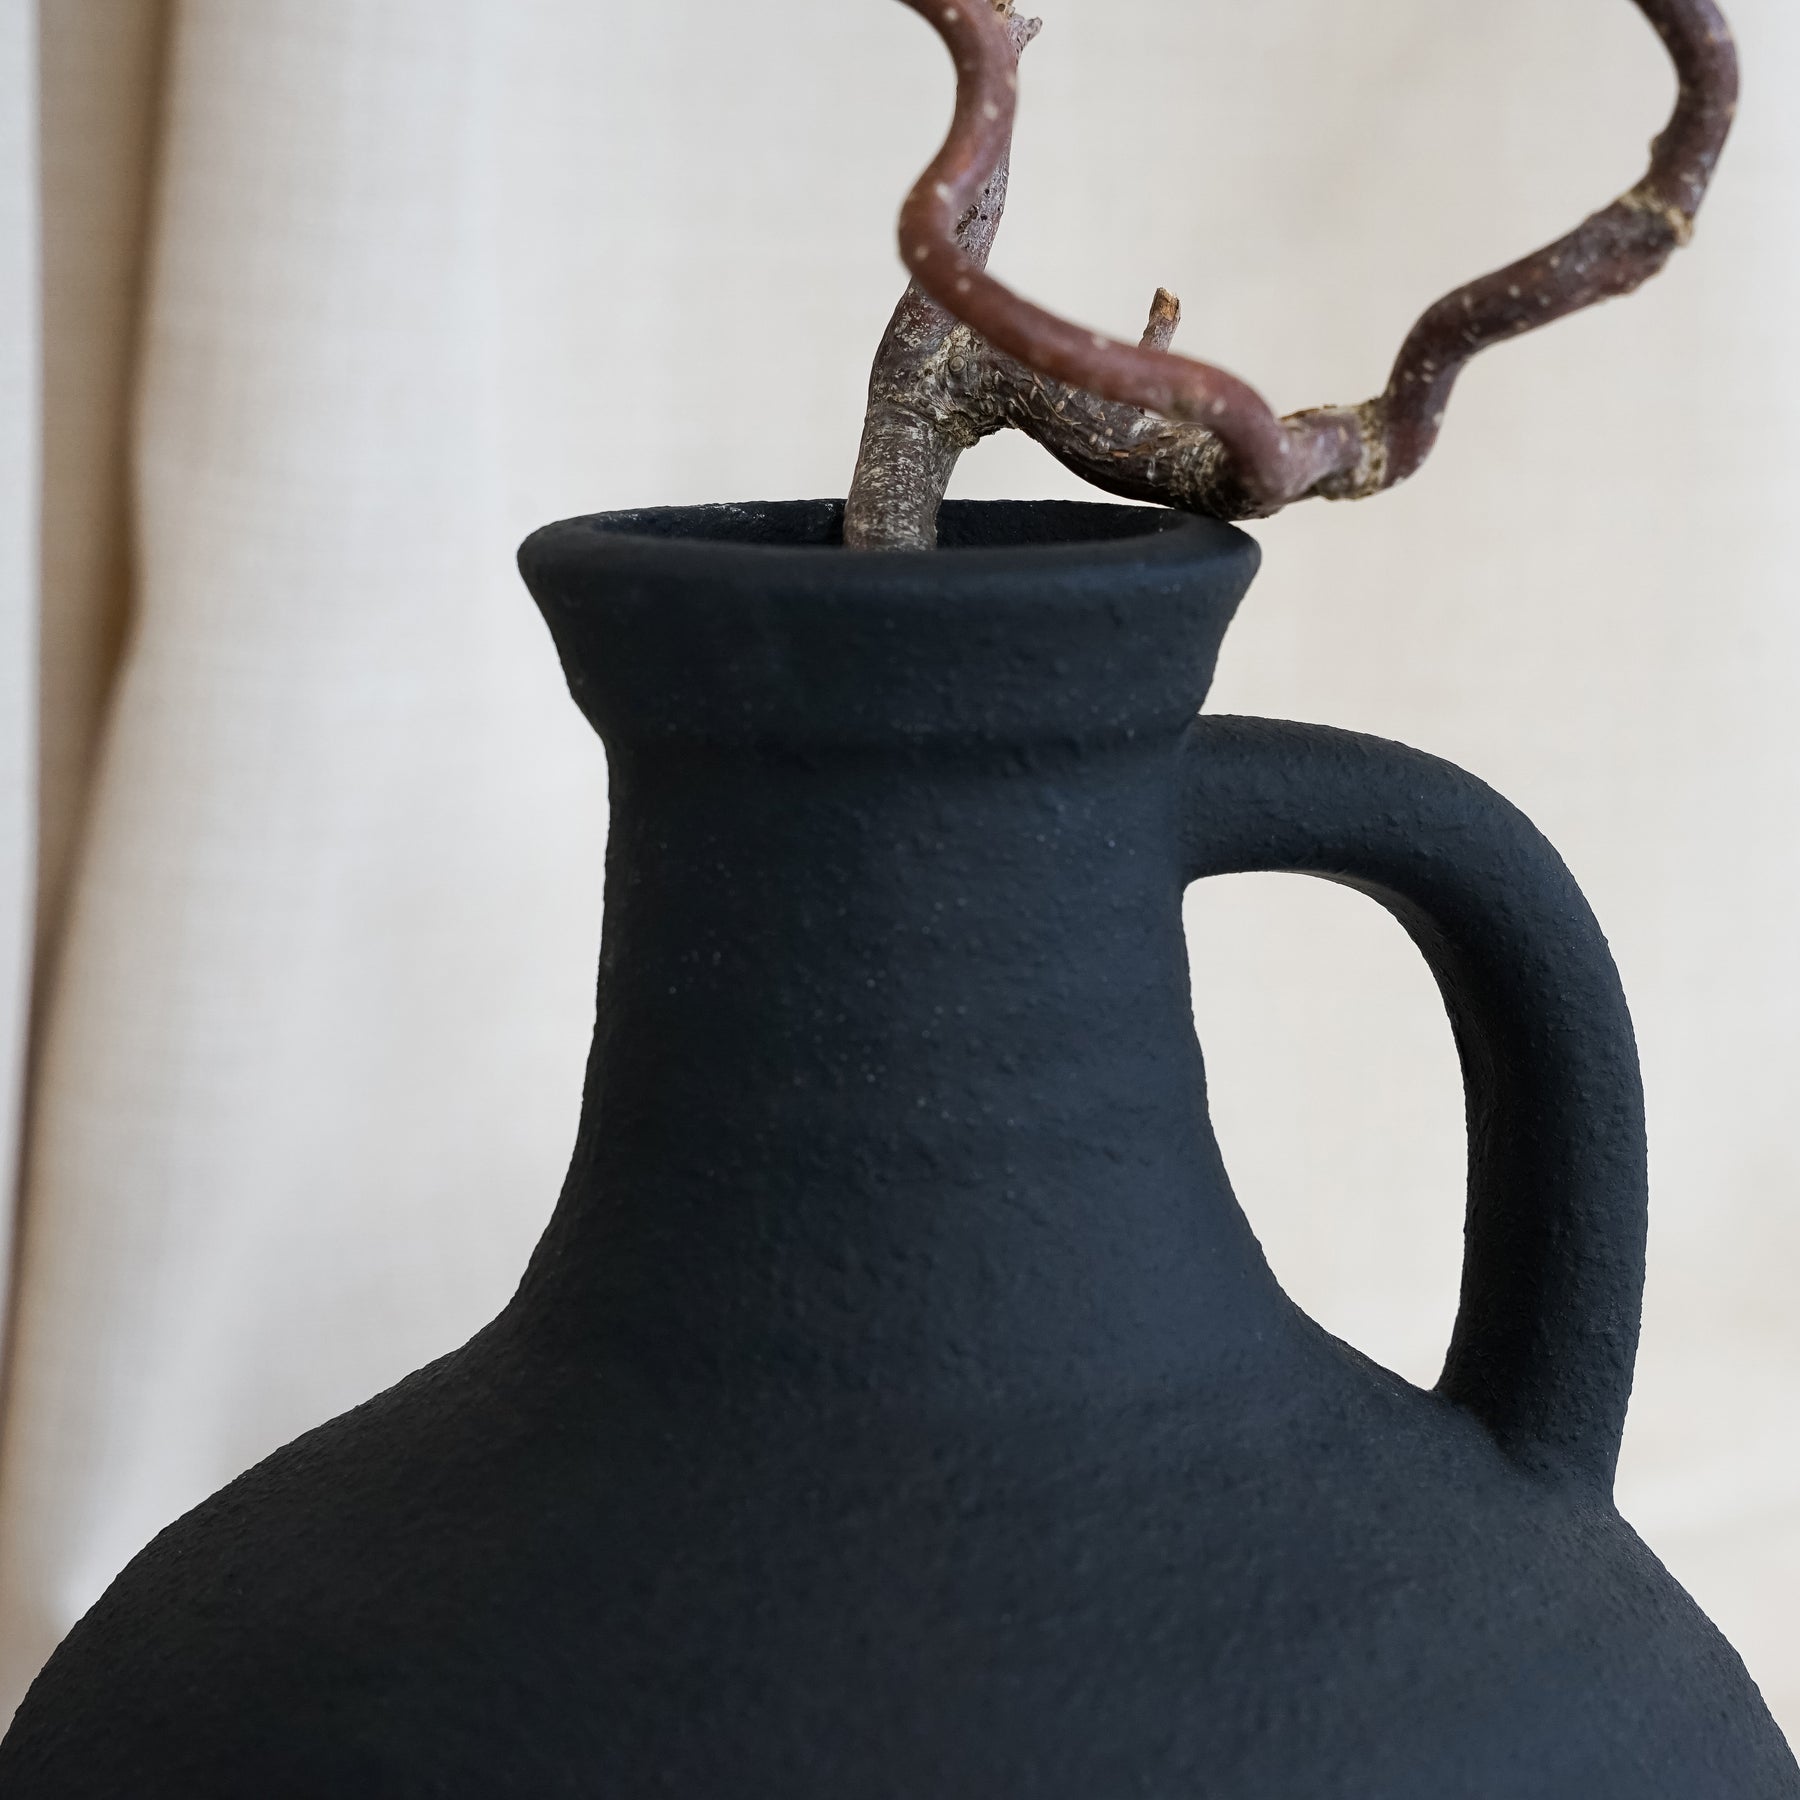 Torrano - Black Textured Ceramic Small Vase